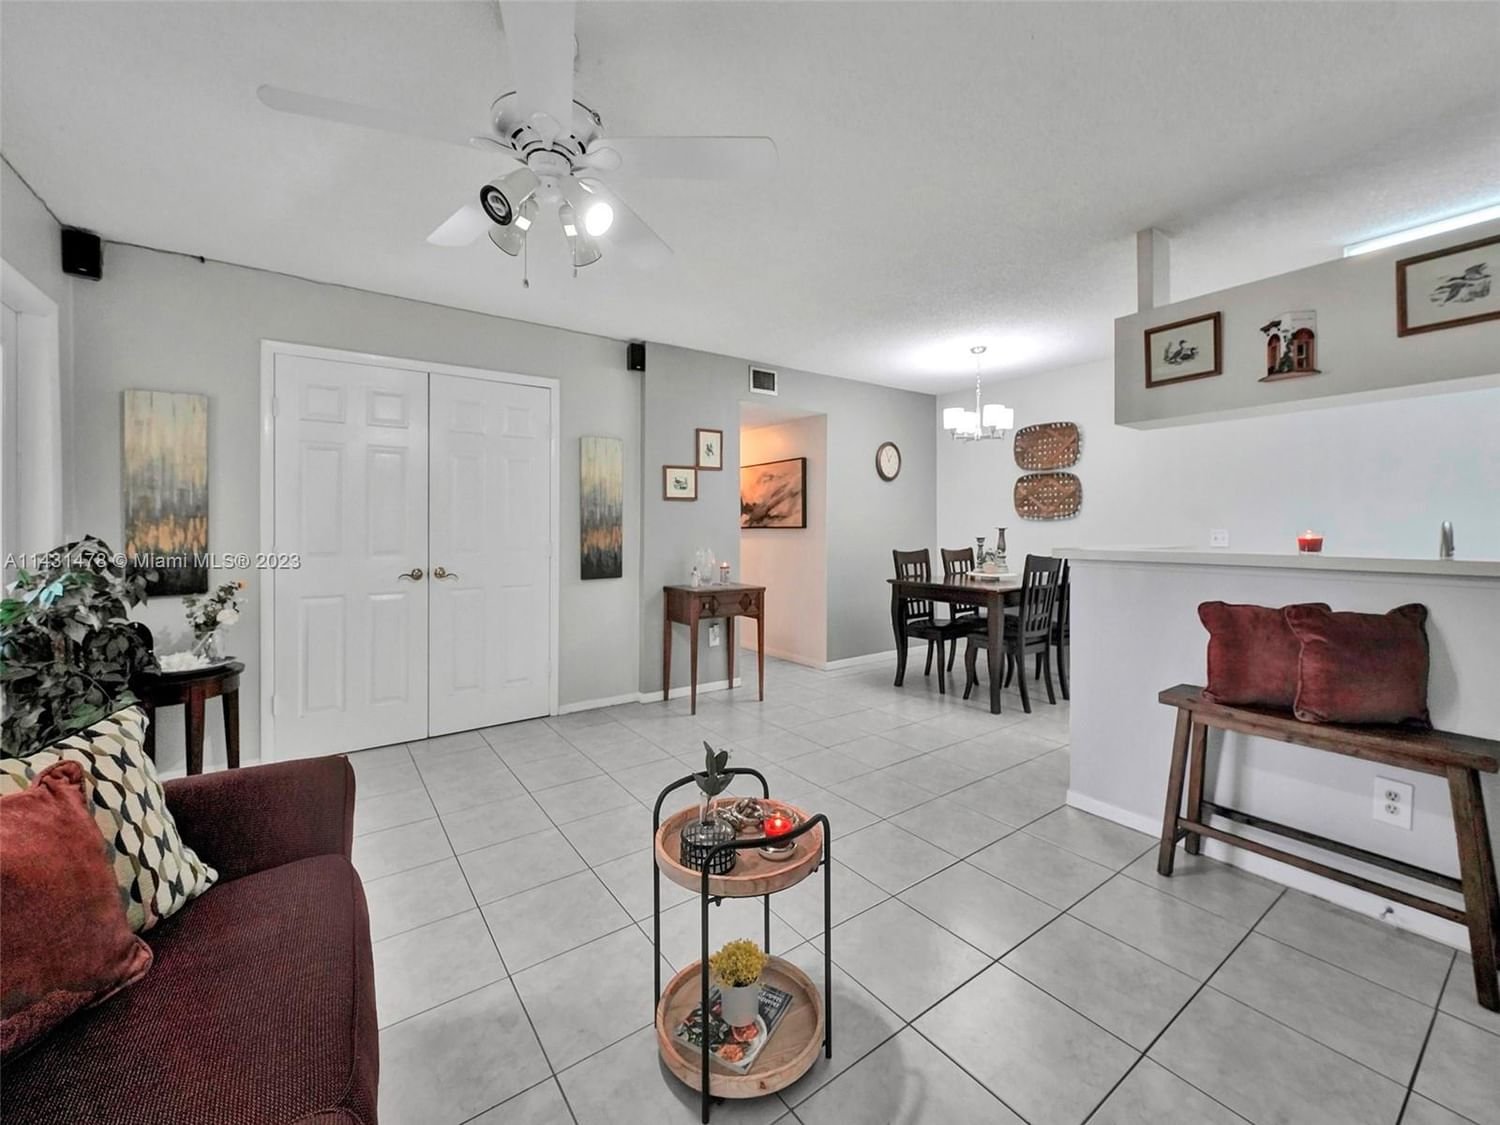 Real estate property located at 9725 Hammocks Blvd #105f, Miami-Dade County, Miami, FL